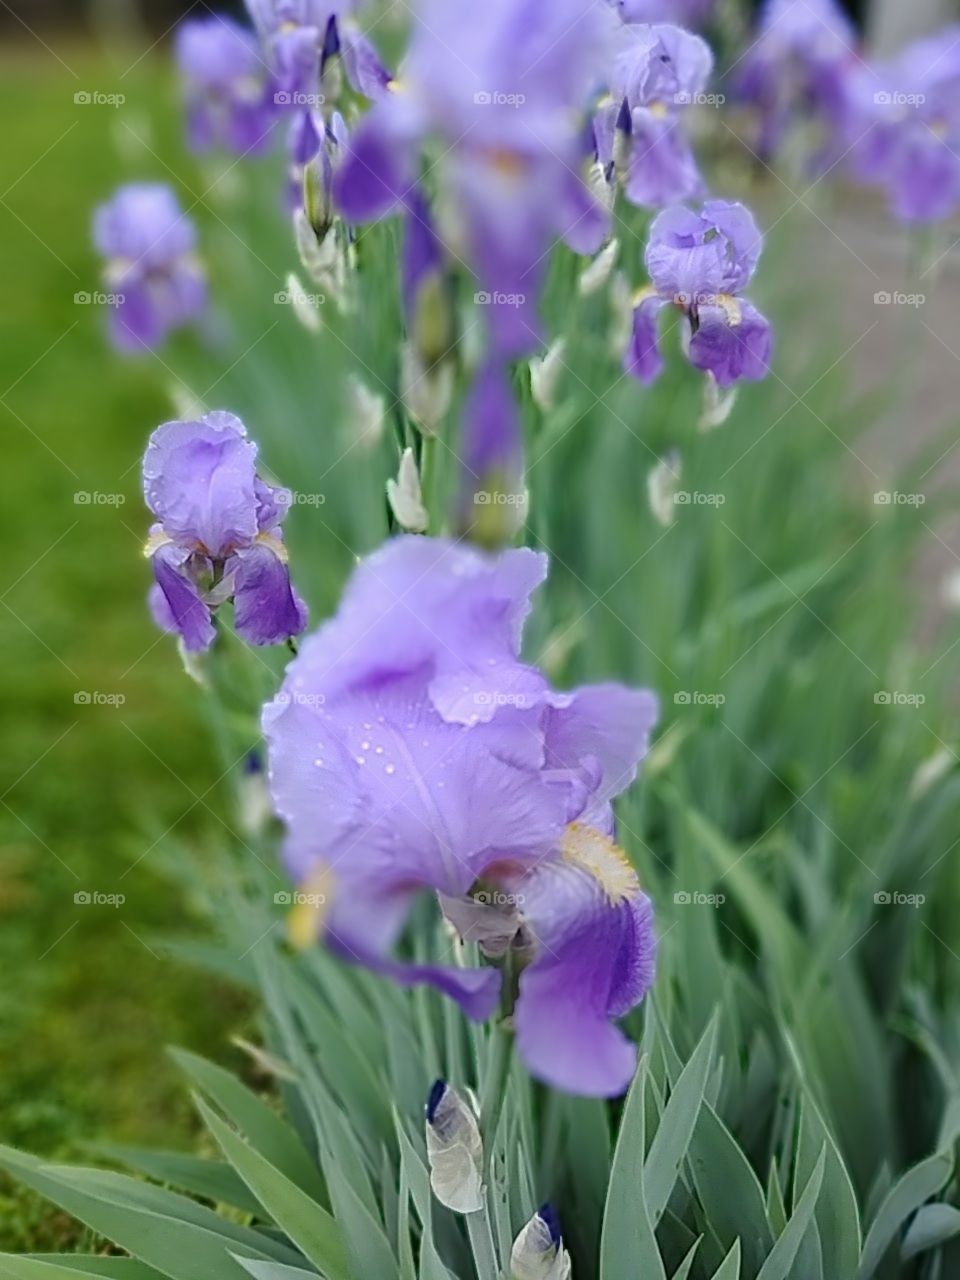 Field of Iri
Field of Iris'